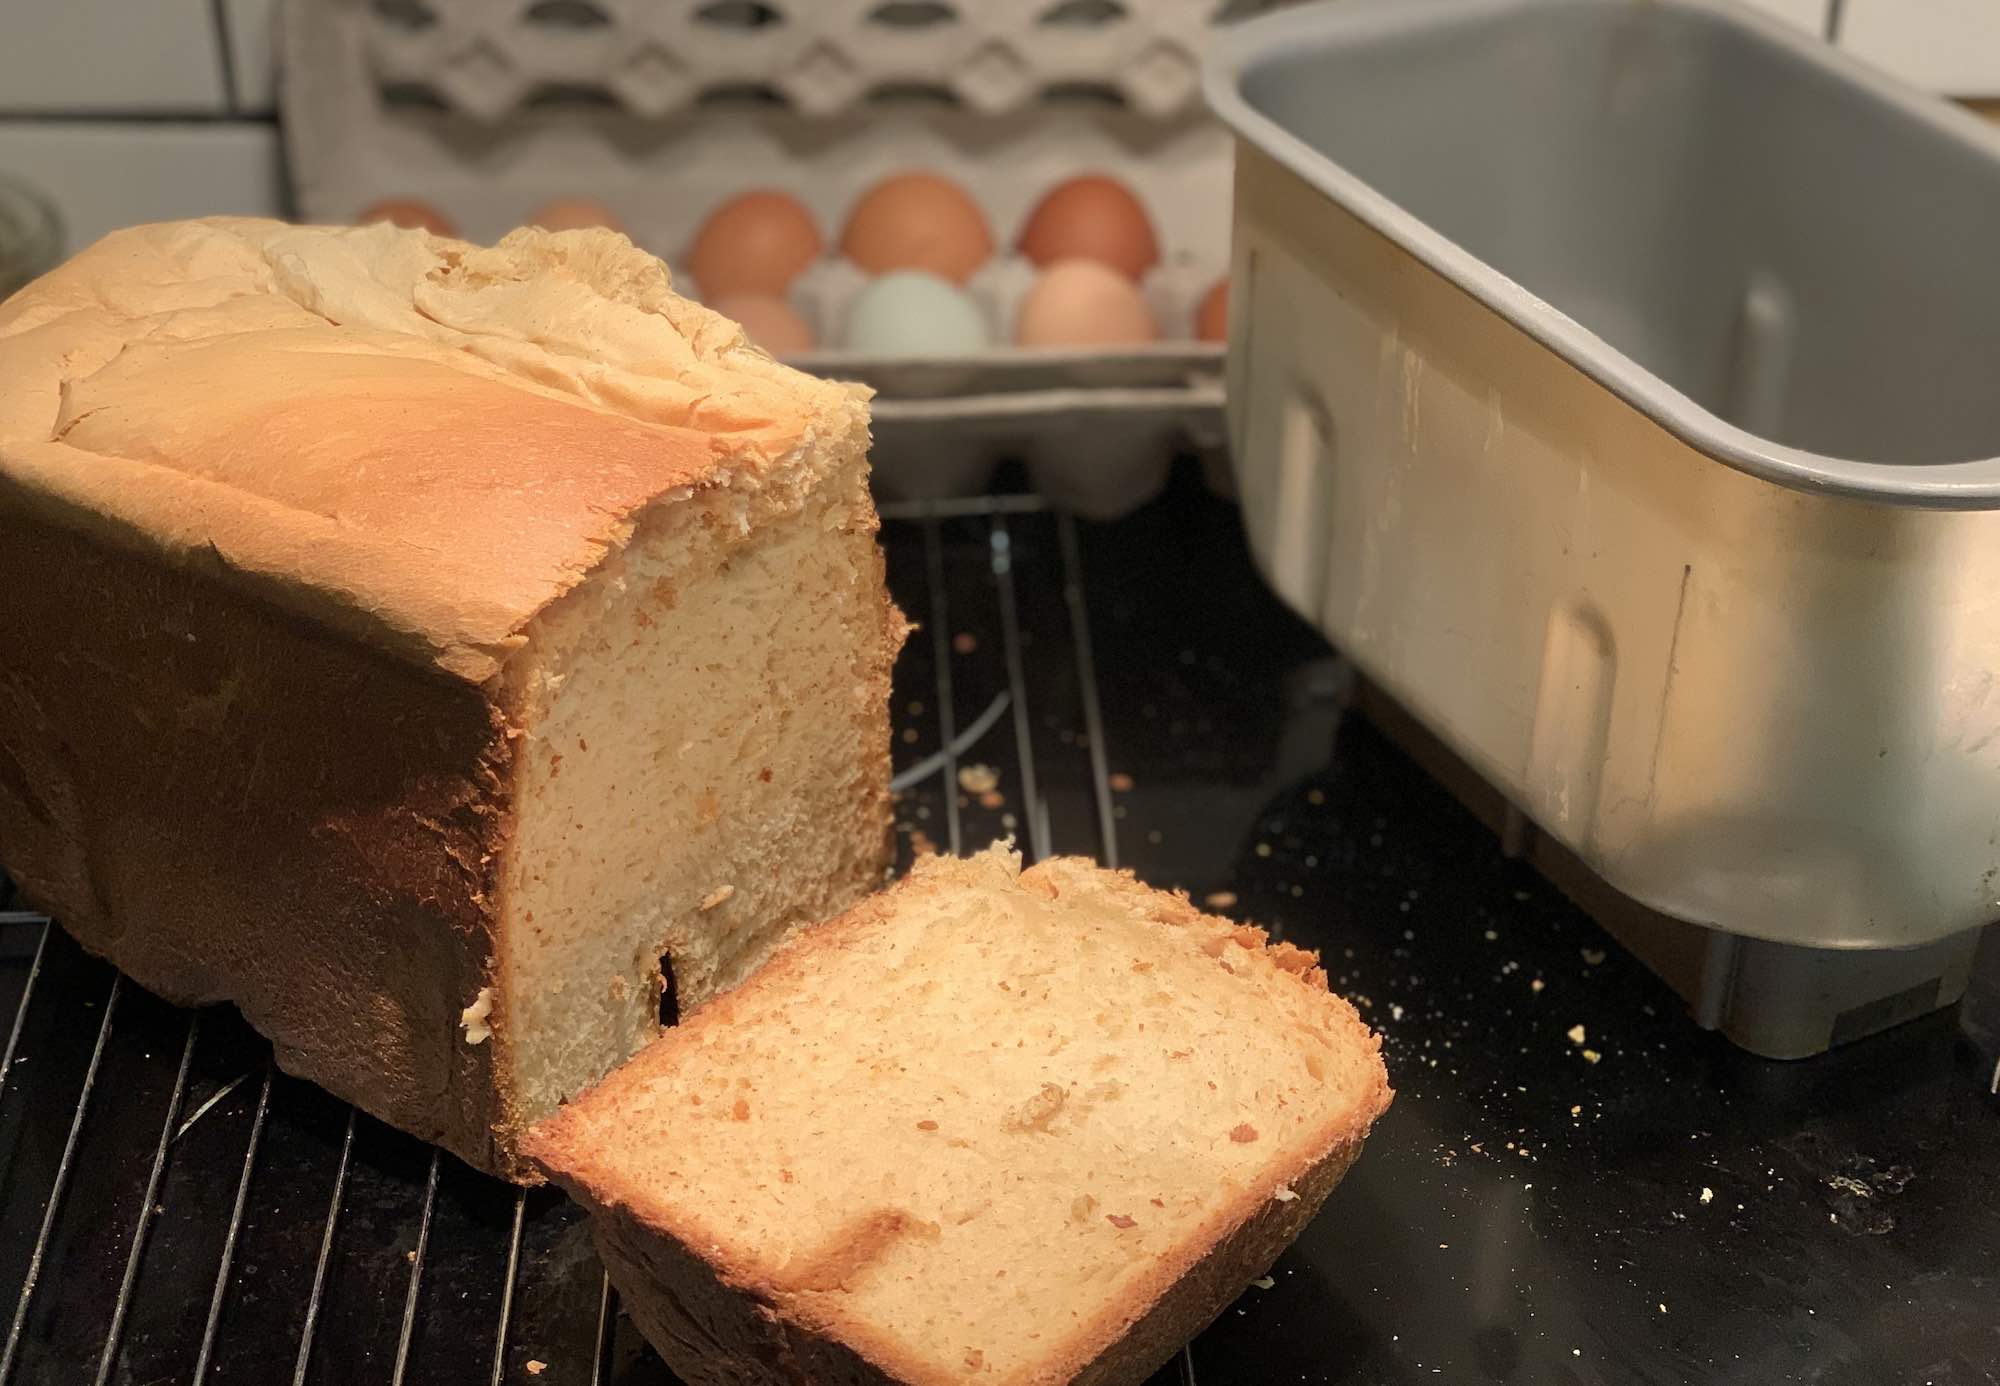 Zojirushi Home Bakery Supreme Breadmaker review